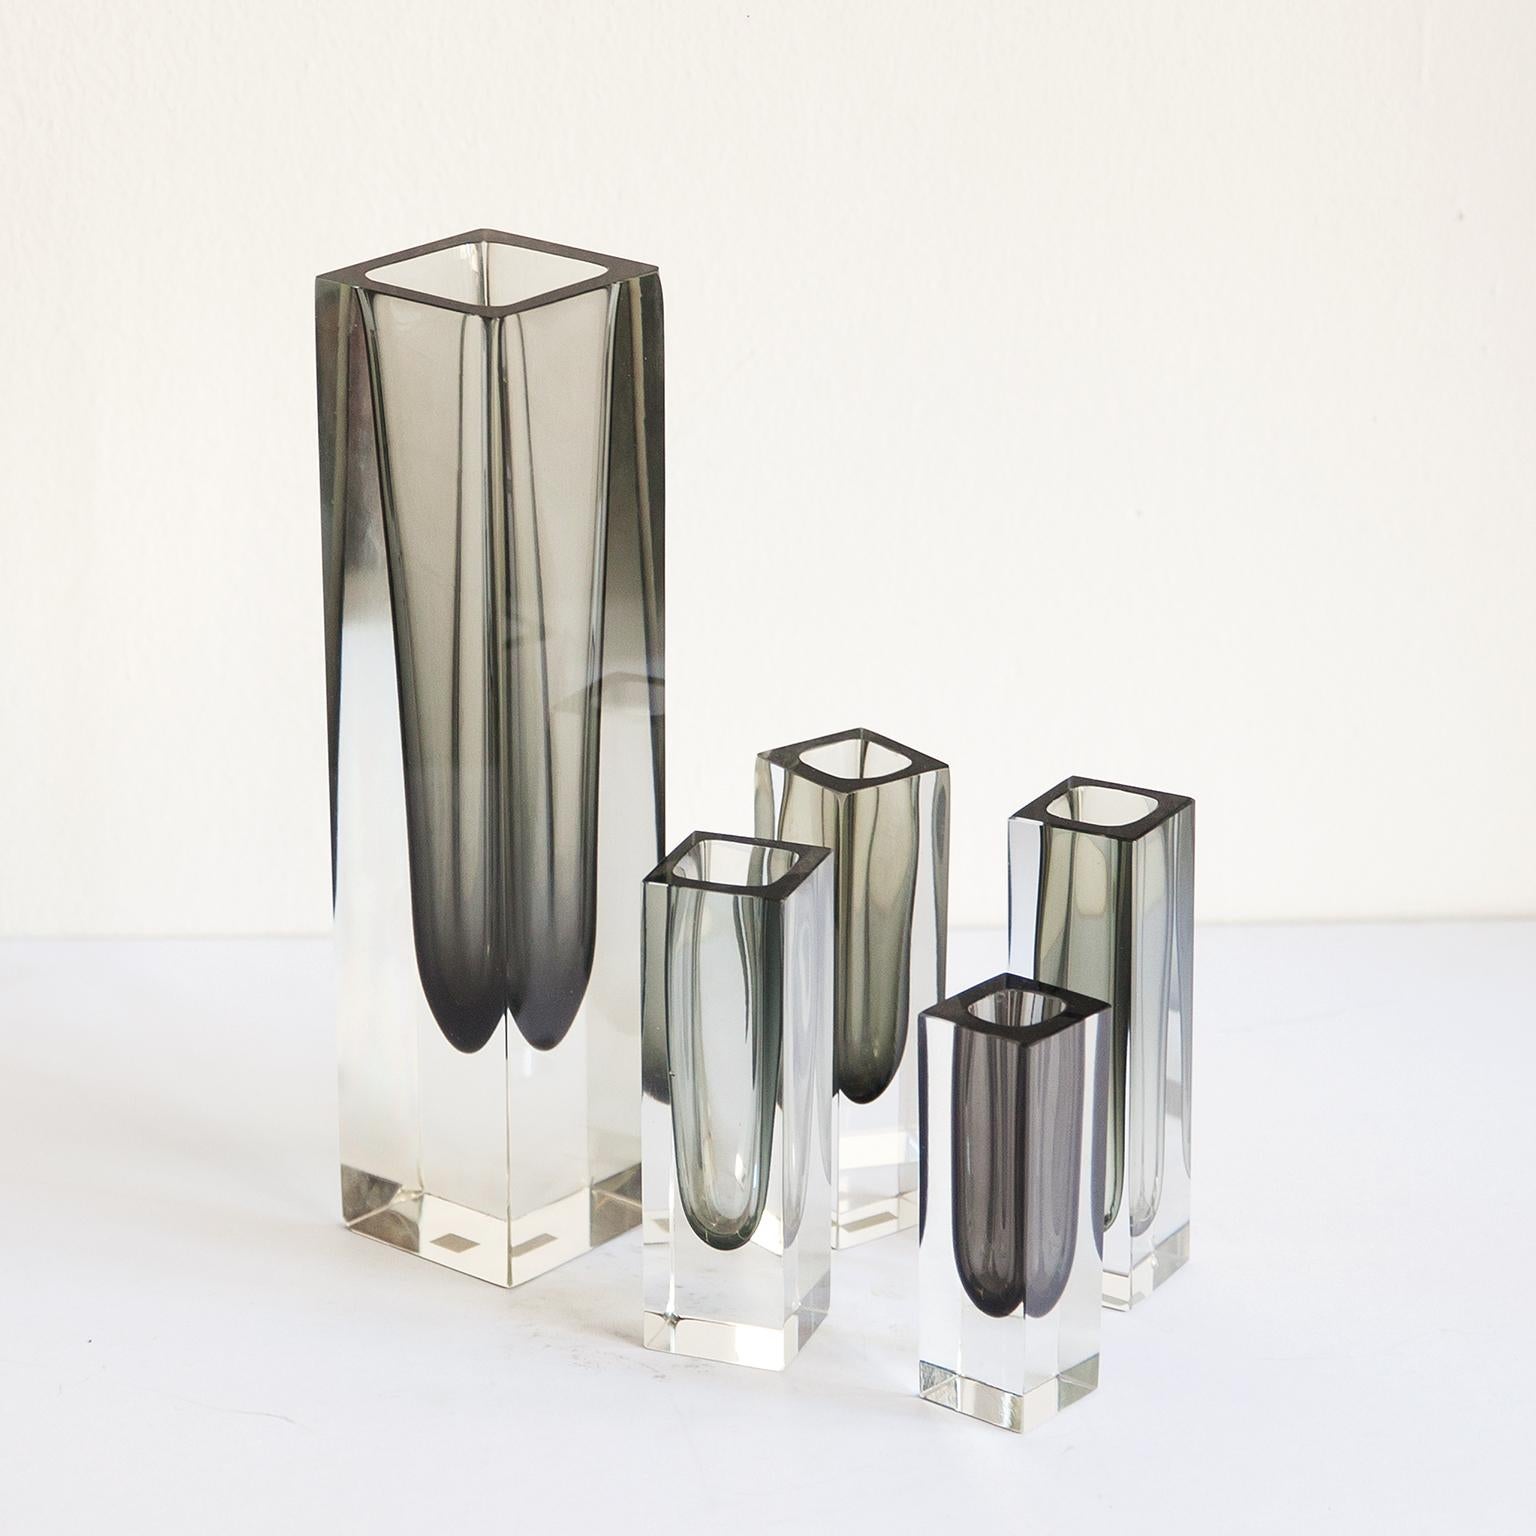 Wunderschönes Vasenpaar aus Murano-Glas von Sommerso, das Flavio Poli zugeschrieben wird.

Die Höhen sind 30, 15, 12 cm und der Durchmesser 7,5-5 cm.